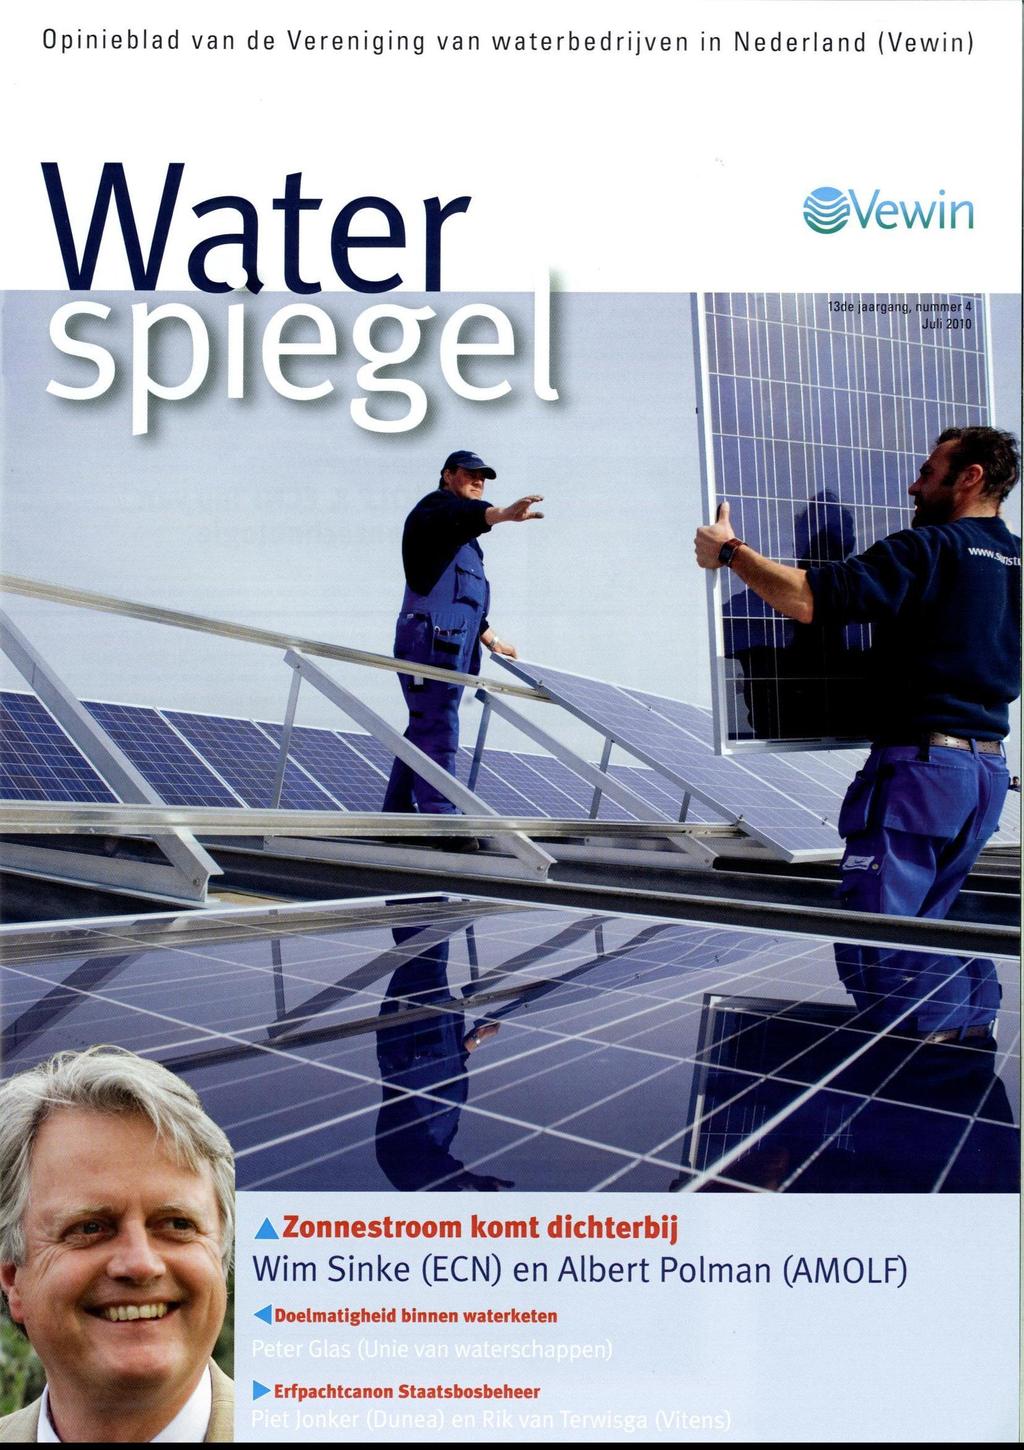 Opinieblad van de Vereniging van waterbedrijven in Nederland (Vewin) Water,Zonnestroom komt dichterbij